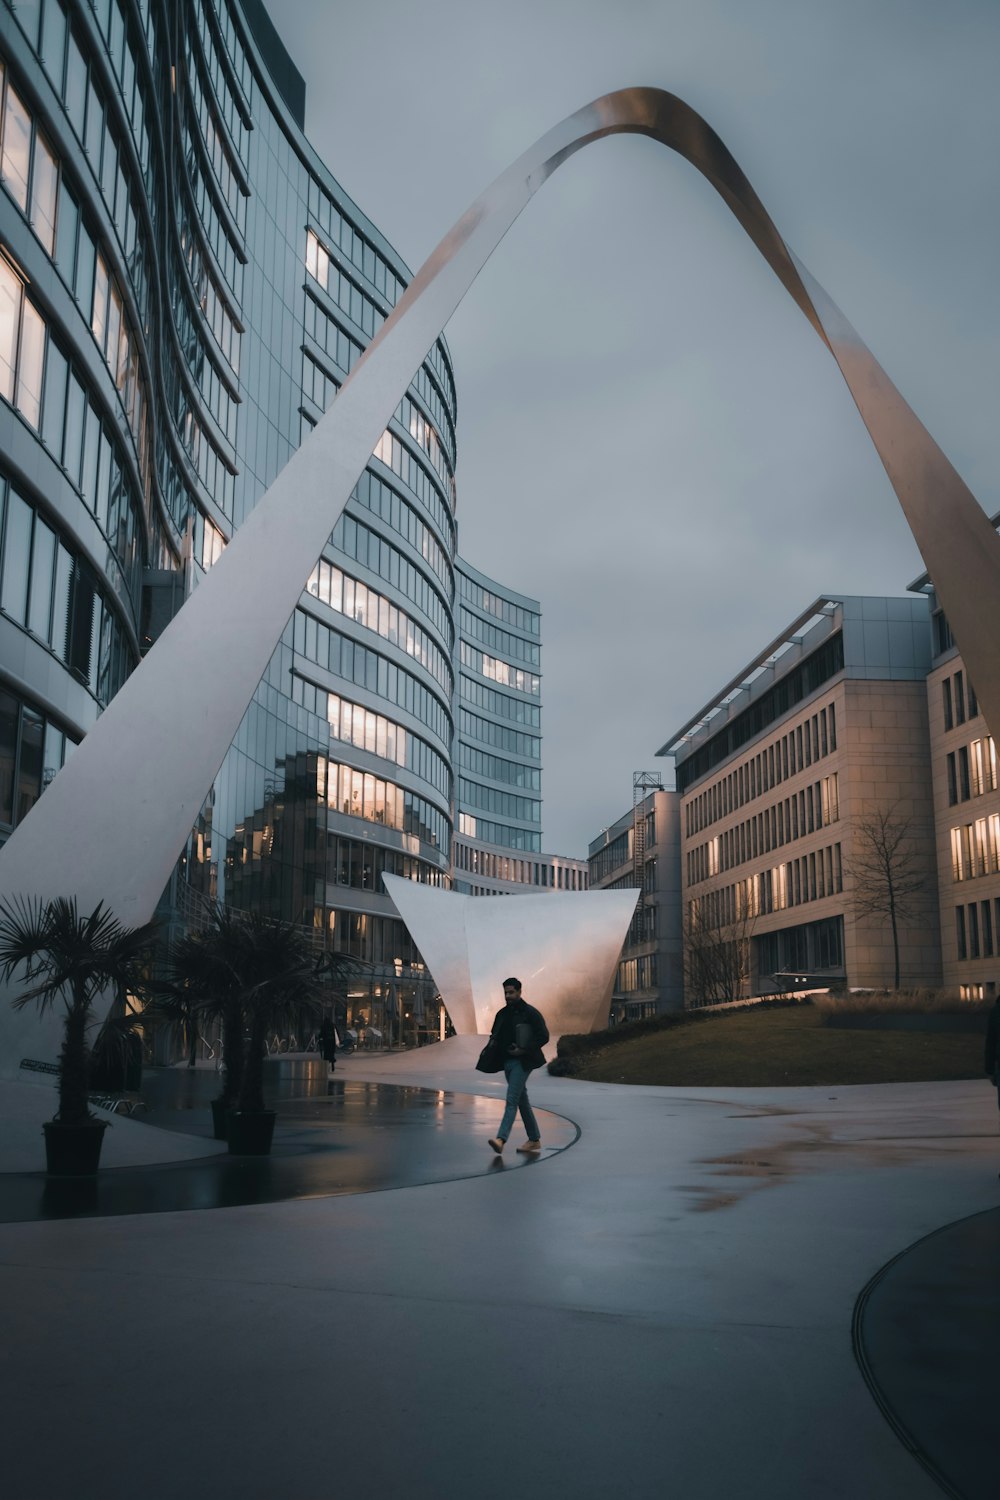 Un homme fait du skateboard devant un immeuble